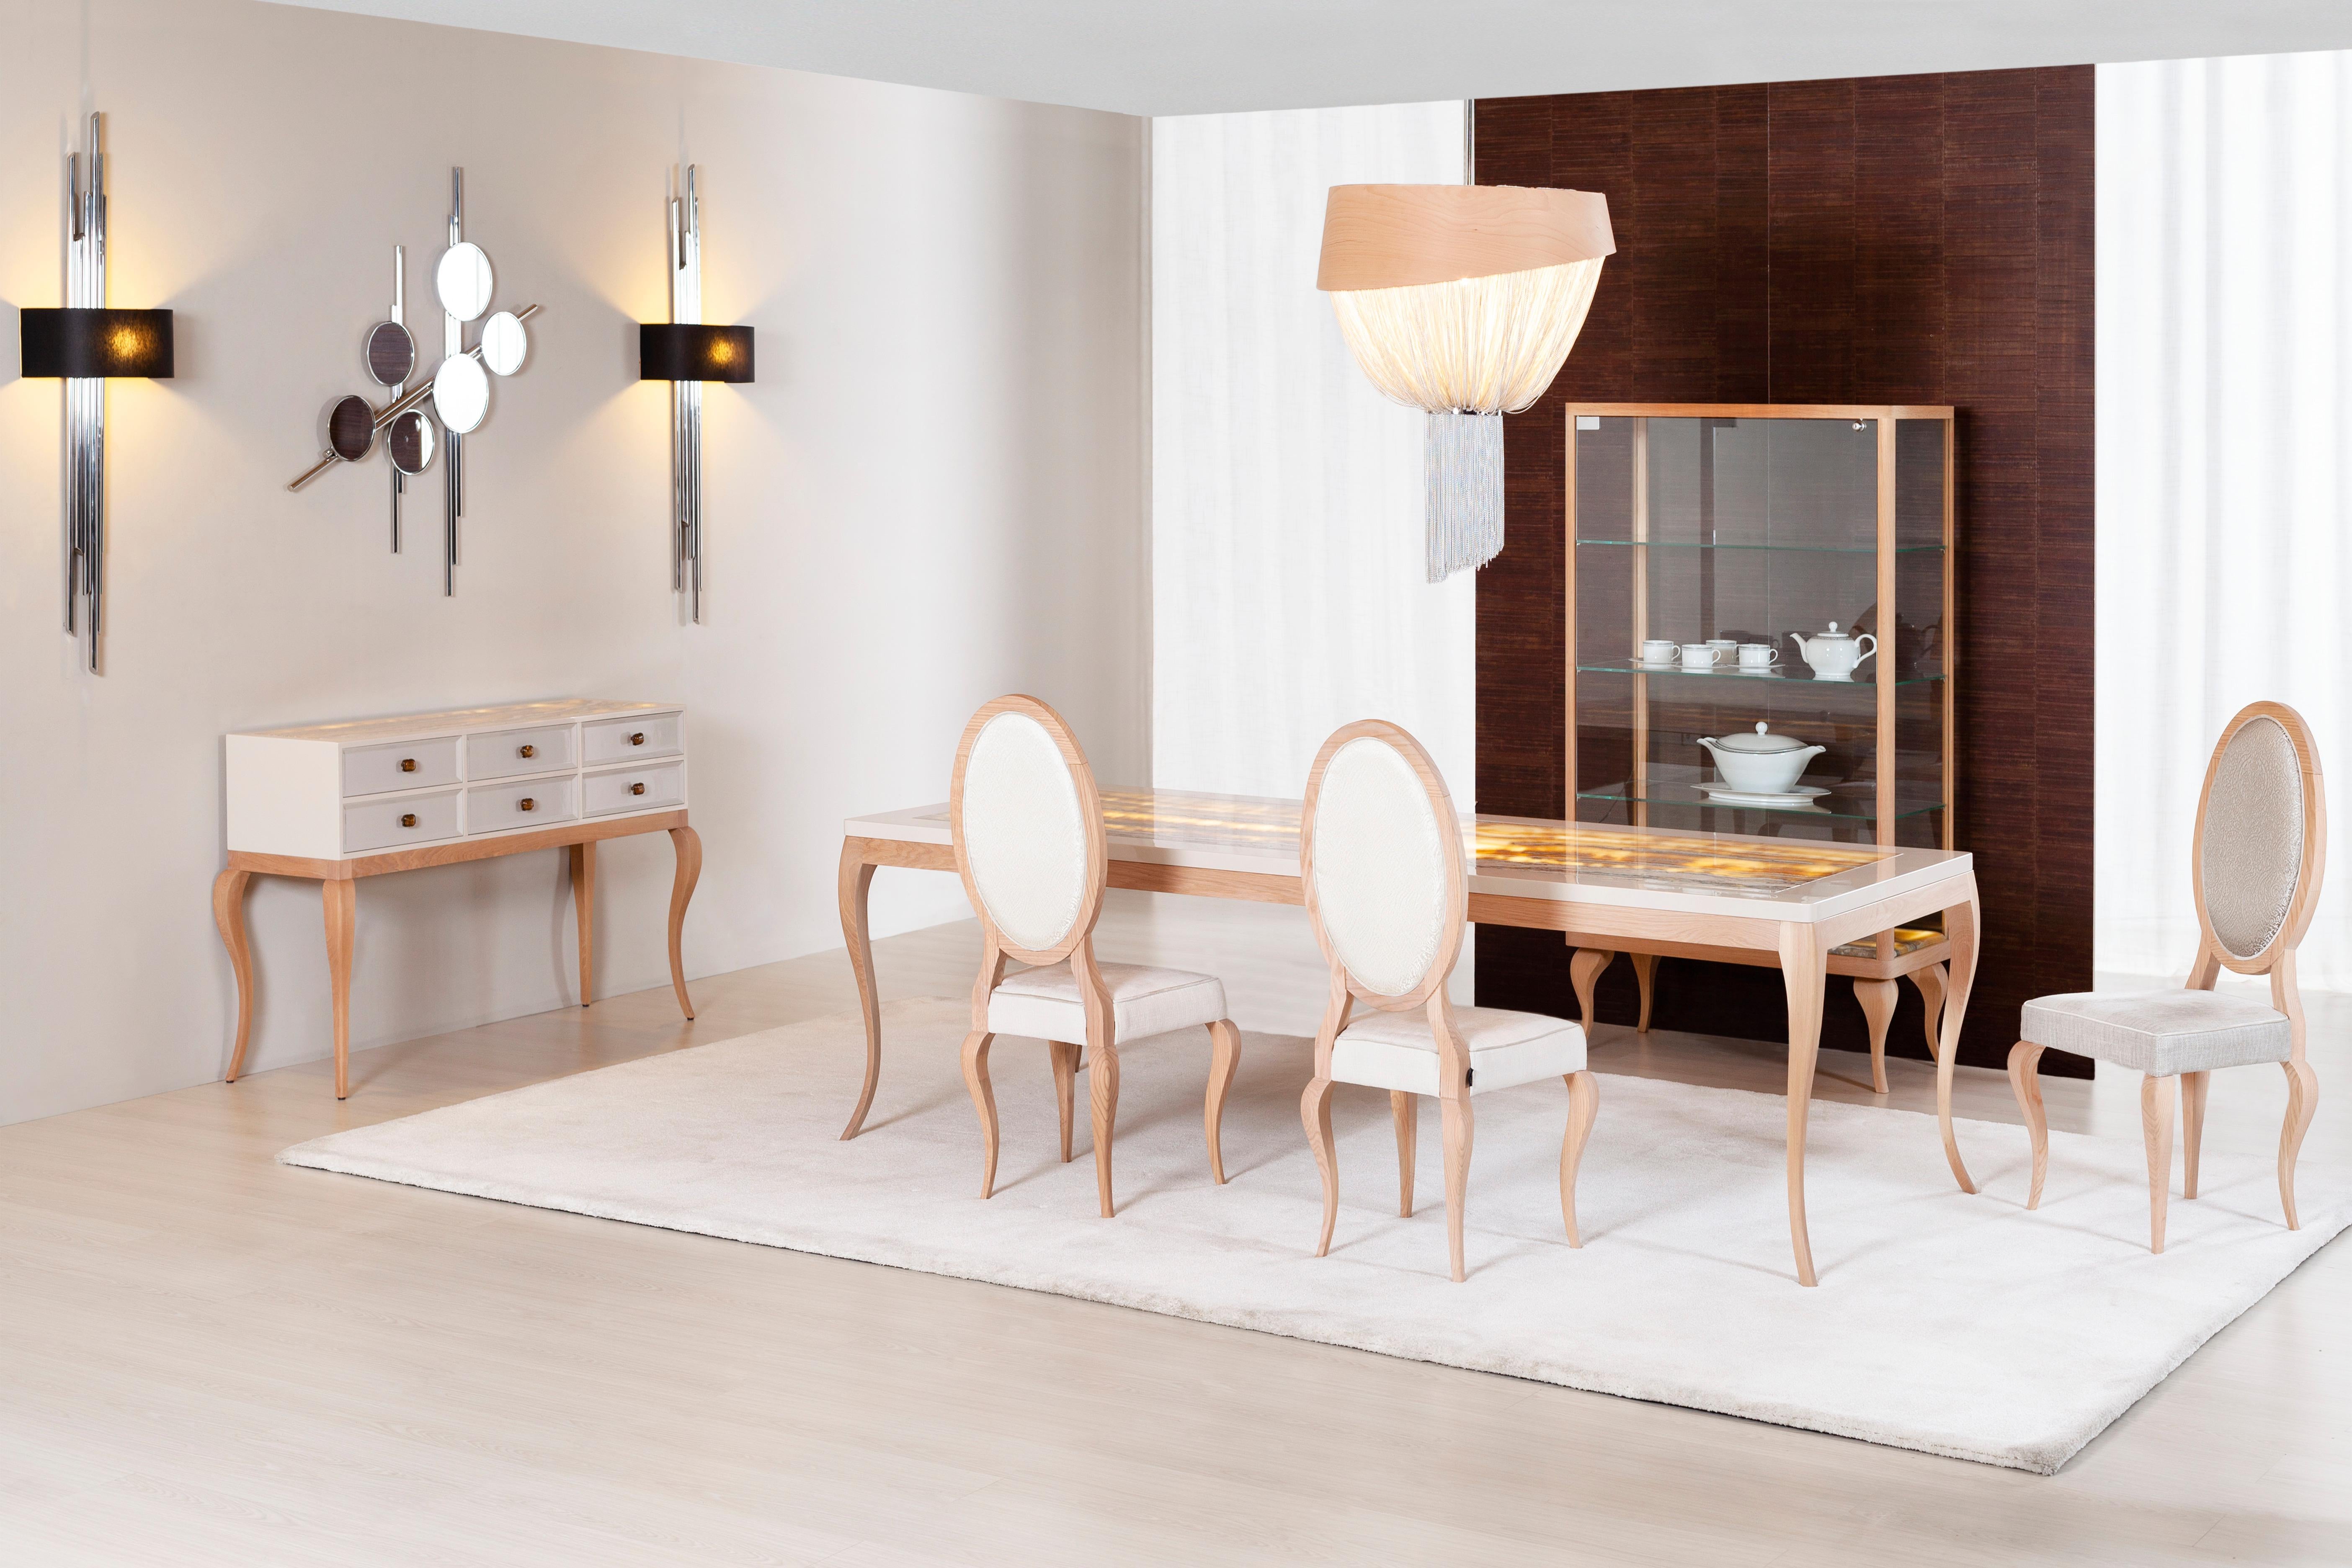 Table de salle à manger Veneza, Collection S, fabriquée à la main au Portugal - Europe by GF Modern.

La table de salle à manger Veneza représente l'aube d'une nouvelle ère moderne. Le plateau de table beige est rehaussé d'une étonnante